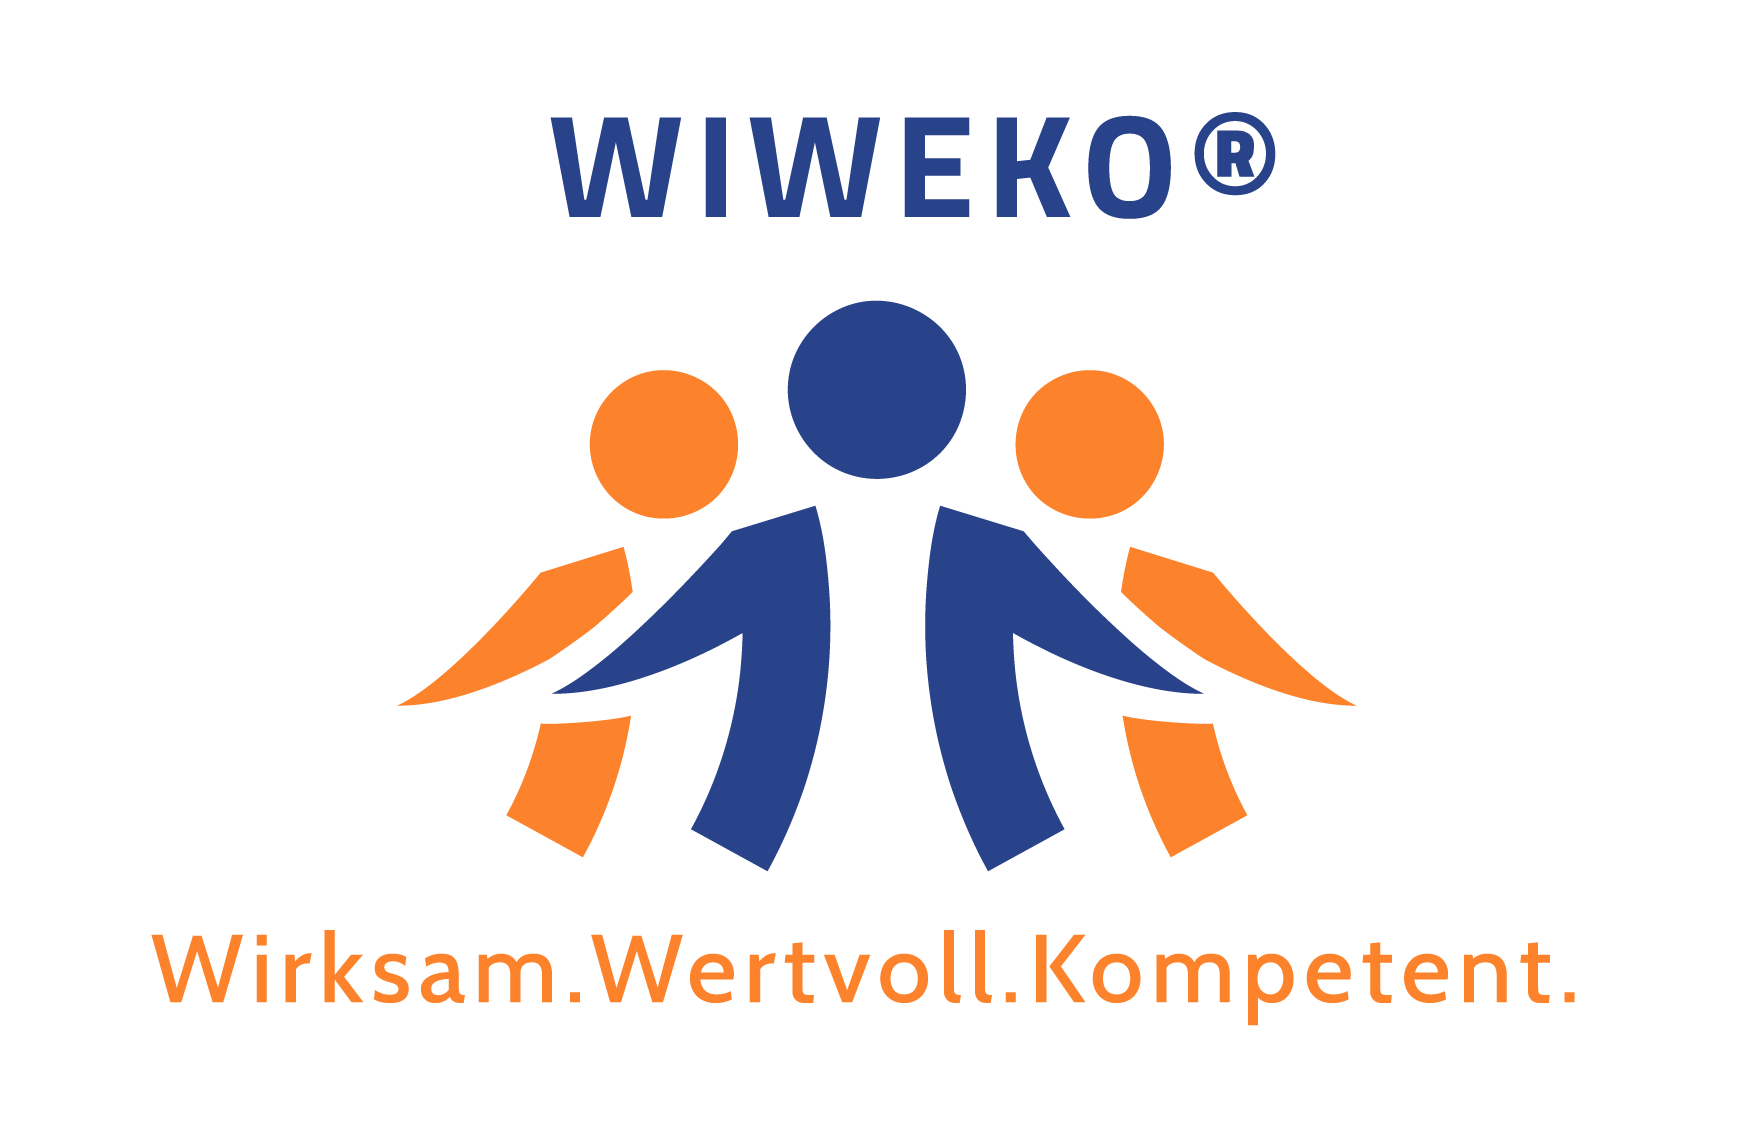 WIWEKO Logo - Motto Wirksam. Wertvoll. Kompetent.